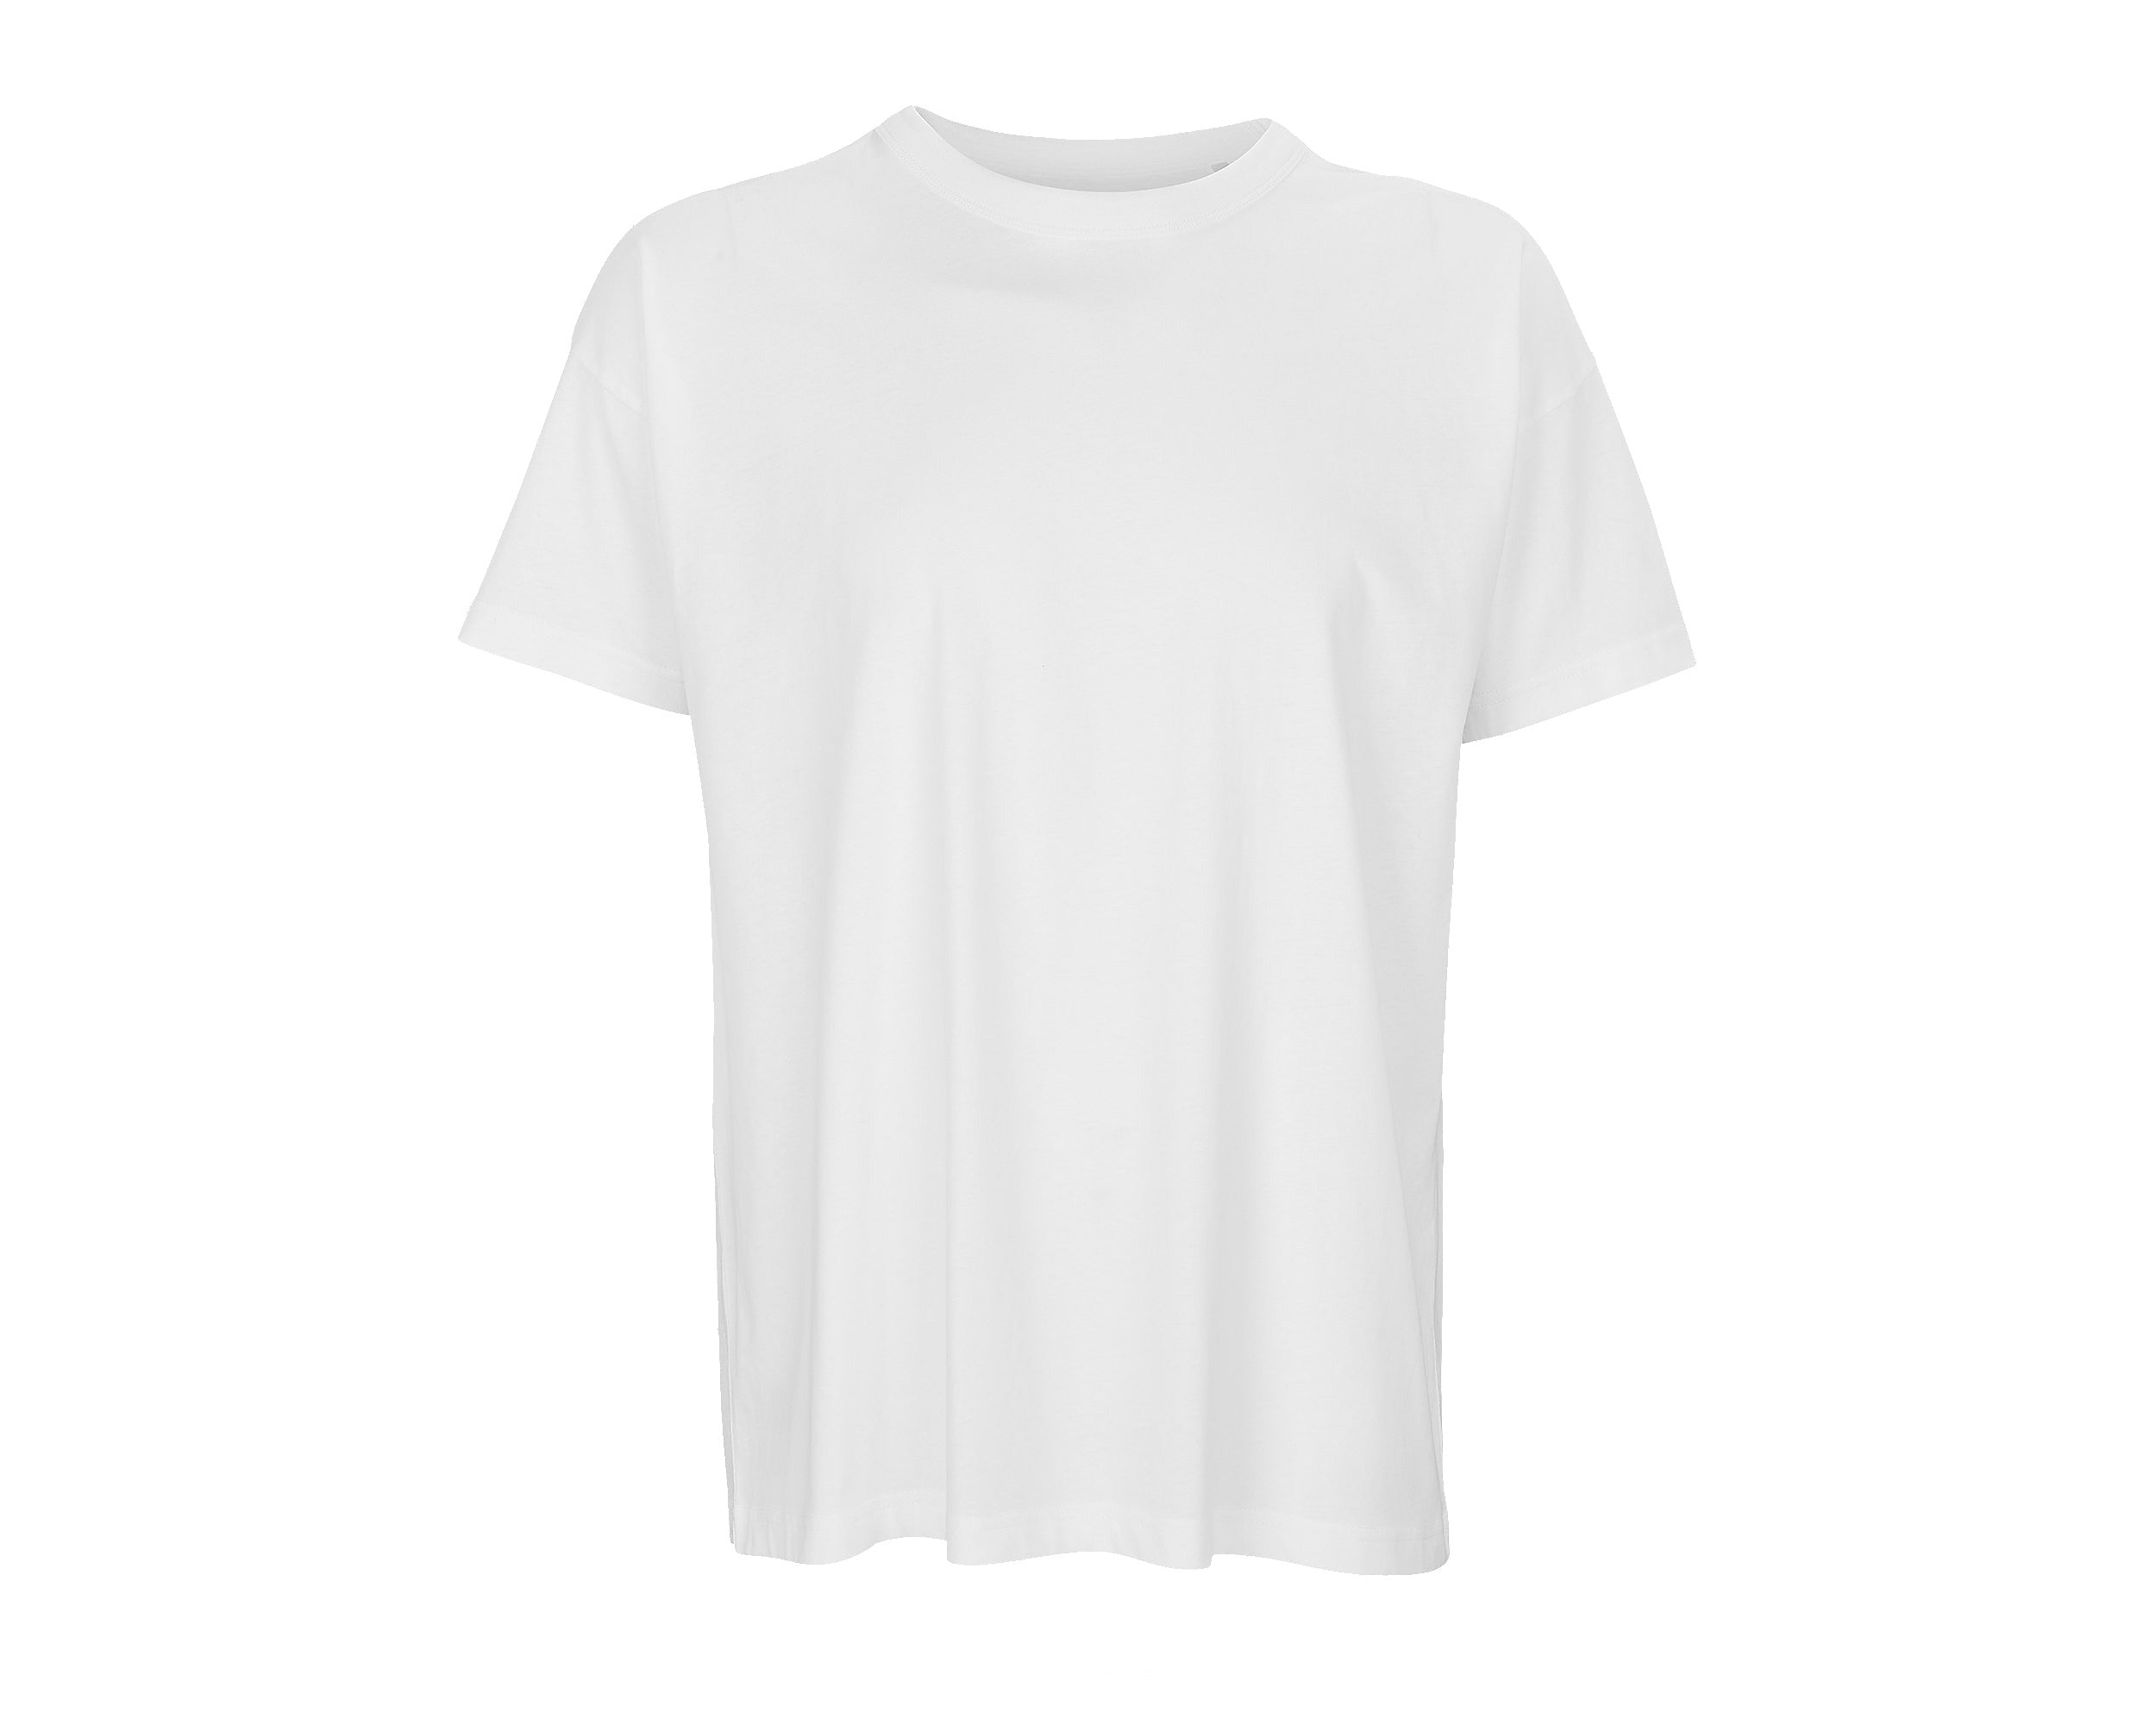 Customizable Oversize T-shirts